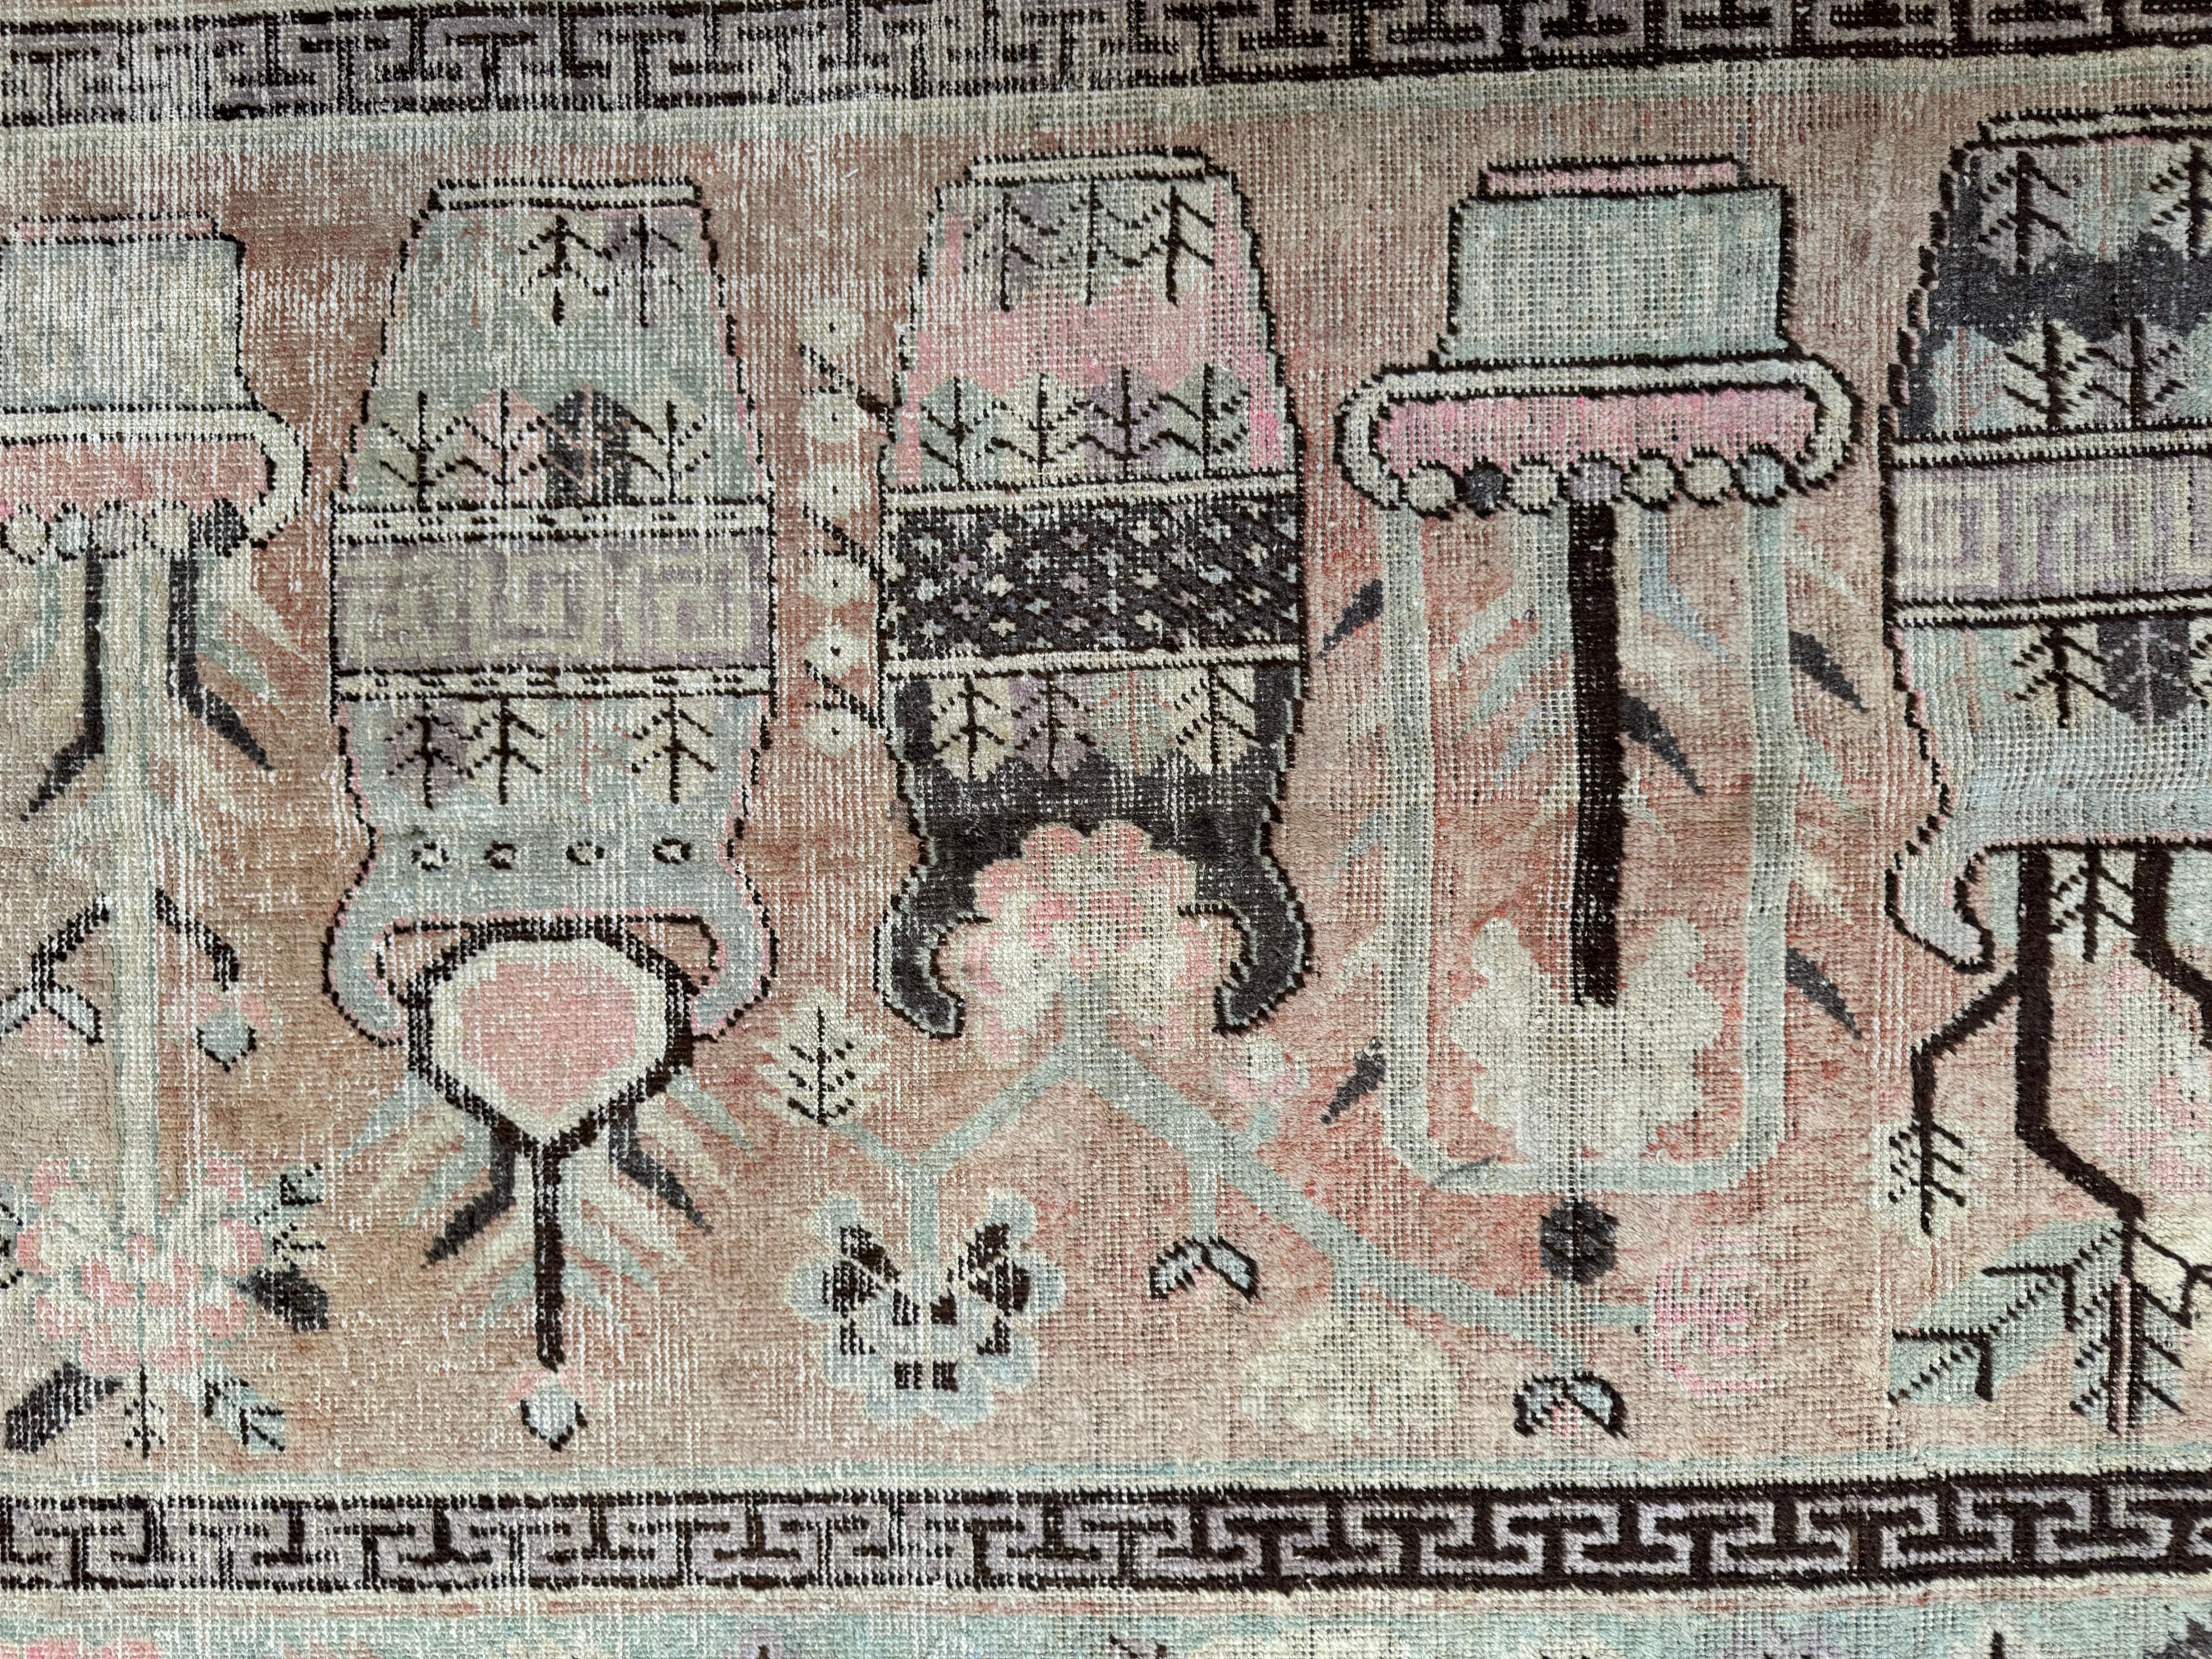 Introduisez une touche de patrimoine avec ce tapis Samarkand antique du XIXe siècle, mesurant 7,1' x 4,6'. Son design complexe et ses tons chauds apportent un charme vintage à n'importe quelle maison américaine, fusionnant sans effort la tradition